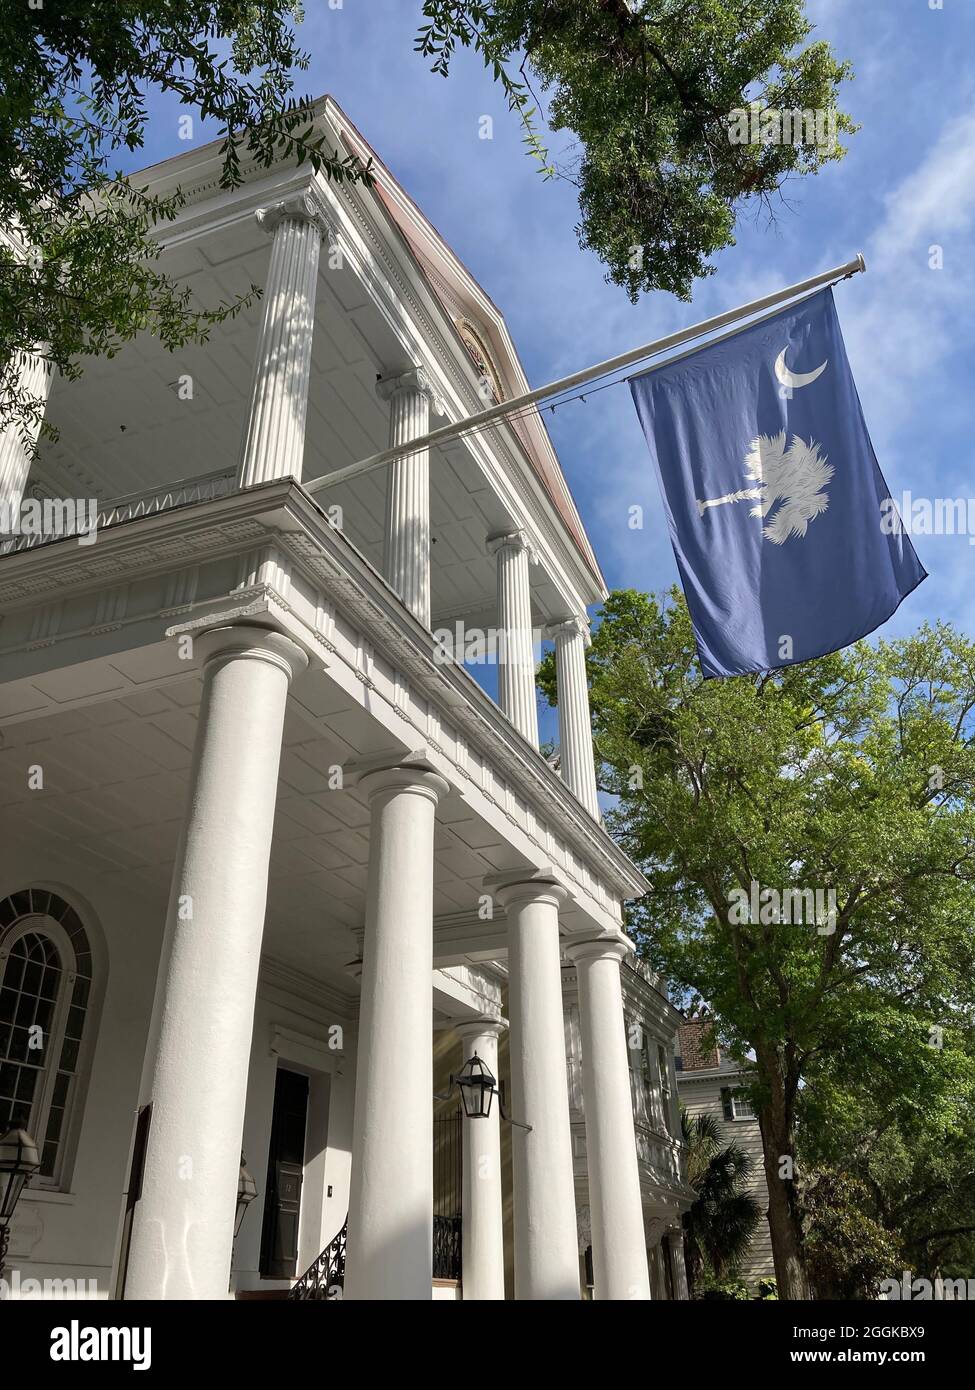 Casa colonial en Charleston, Carolina del Sur, con bandera de Carolina del Sur. La bandera consiste en un palmetto blanco y media luna blanca. Foto de stock